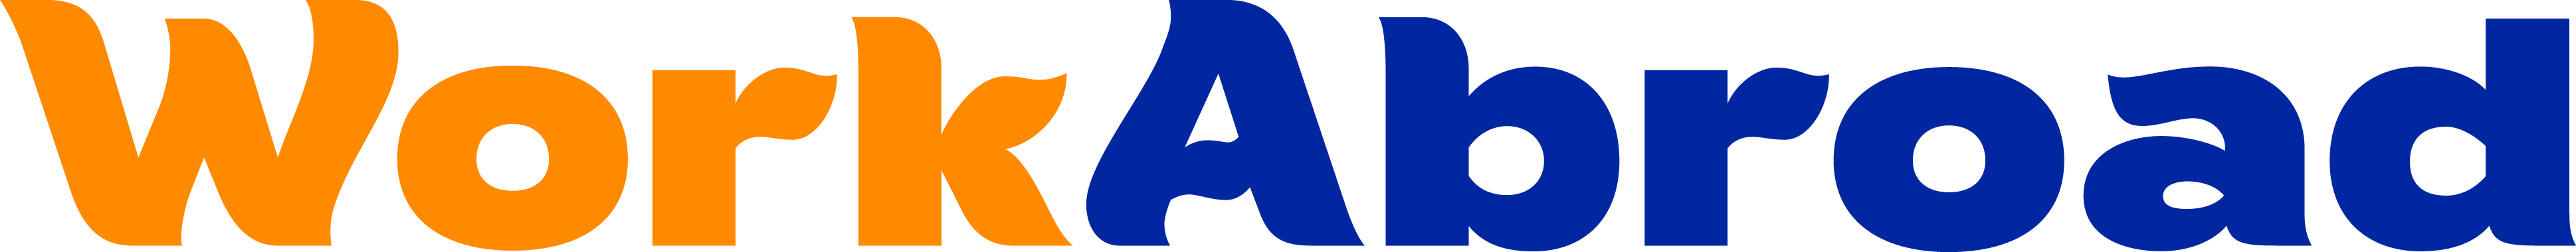 WorkAbroad.ph Logo